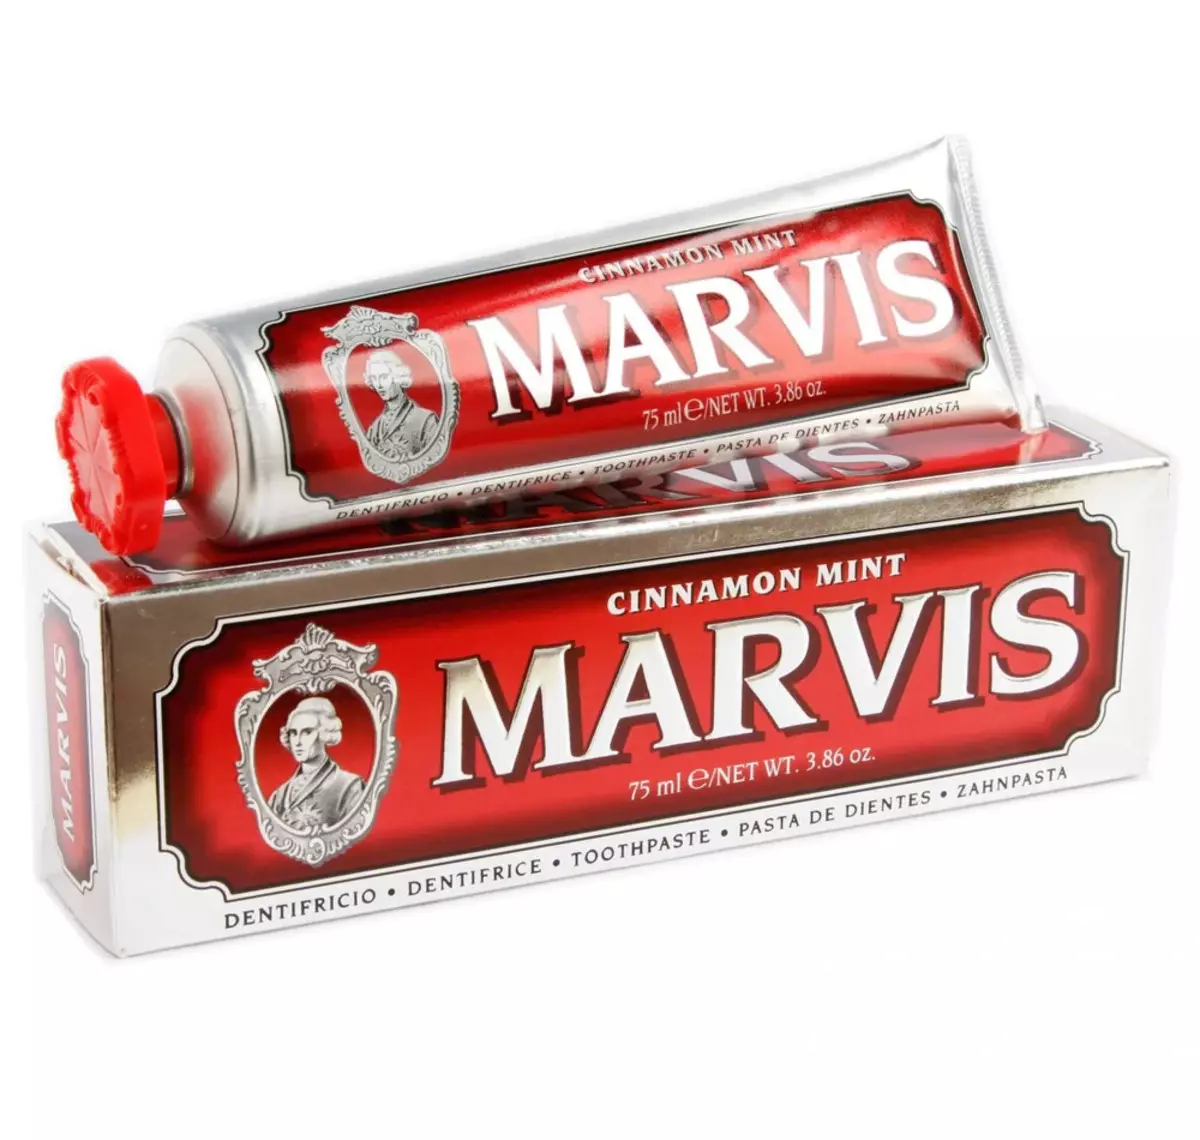 Зубная паста Marvis: італьянская адбельвае паста з густам мяты і язміну, без фтору, набор, склад і водгукі стаматолагаў 24032_12